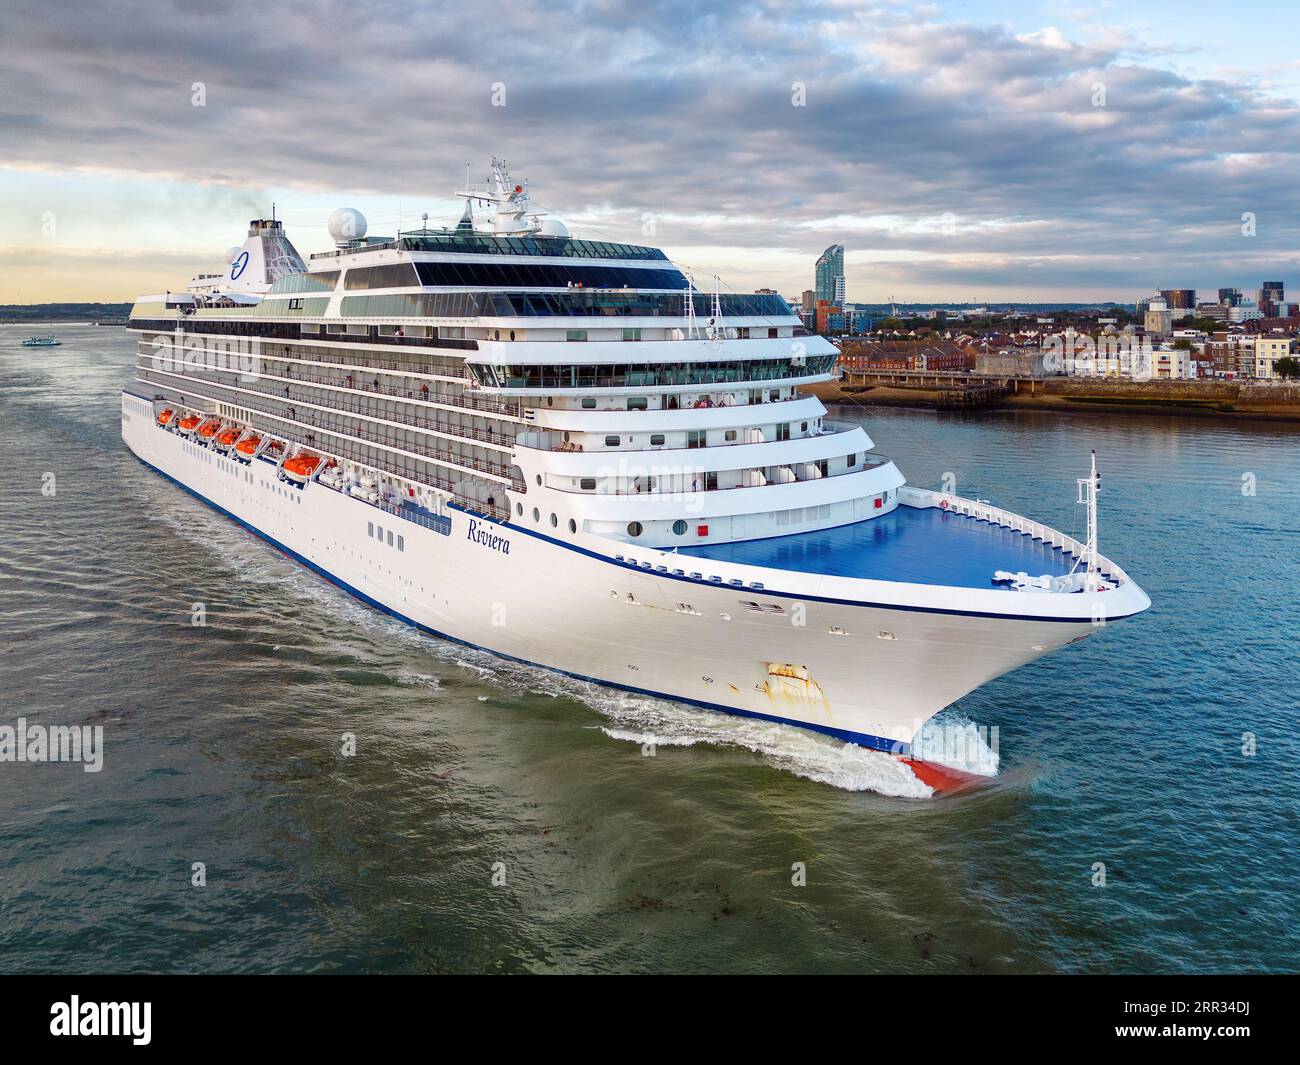 Riviera è una nave da crociera di classe Oceania gestita da Oceania Cruises, parte di Norwegian Cruise Line Holdings. Foto Stock